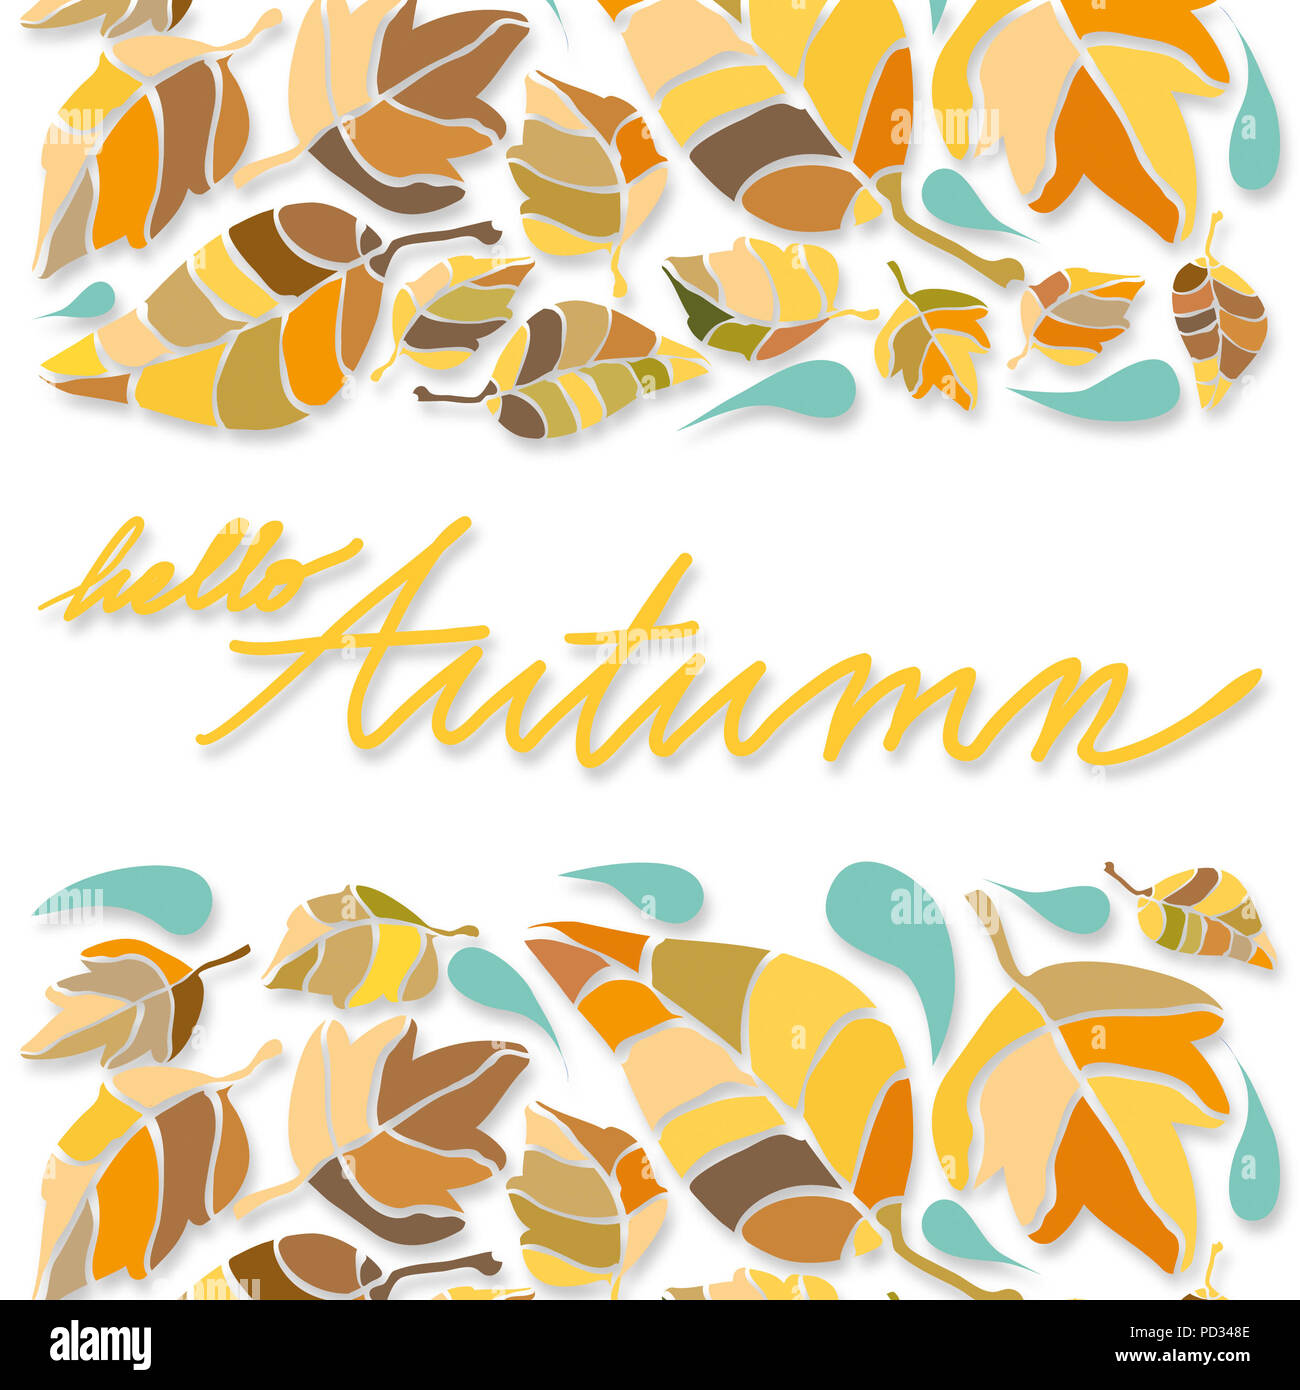 Illustrazione di foglie, fogliame, in caldi colori, sfumature di beige e marrone e scende in calde tonalità turchese, isolato blu su sfondo bianco Foto Stock